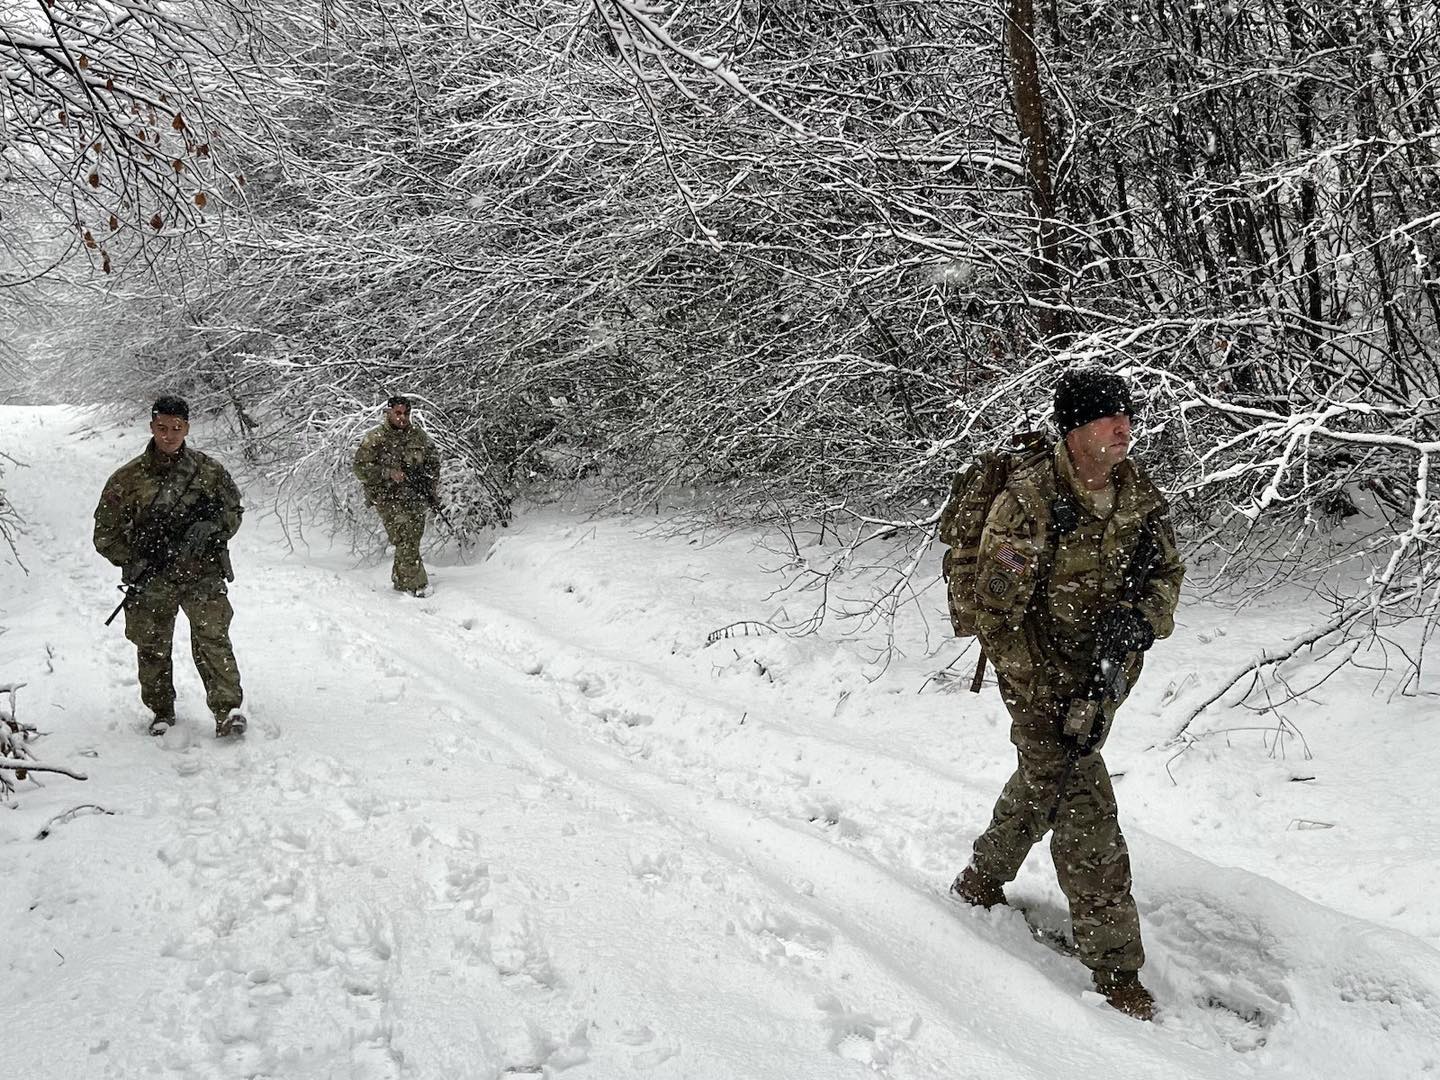 Kurti alarmoi për sulme të reja, KFOR tregon si ushtarët po patrullojnë për siguri afër Leposaviqit